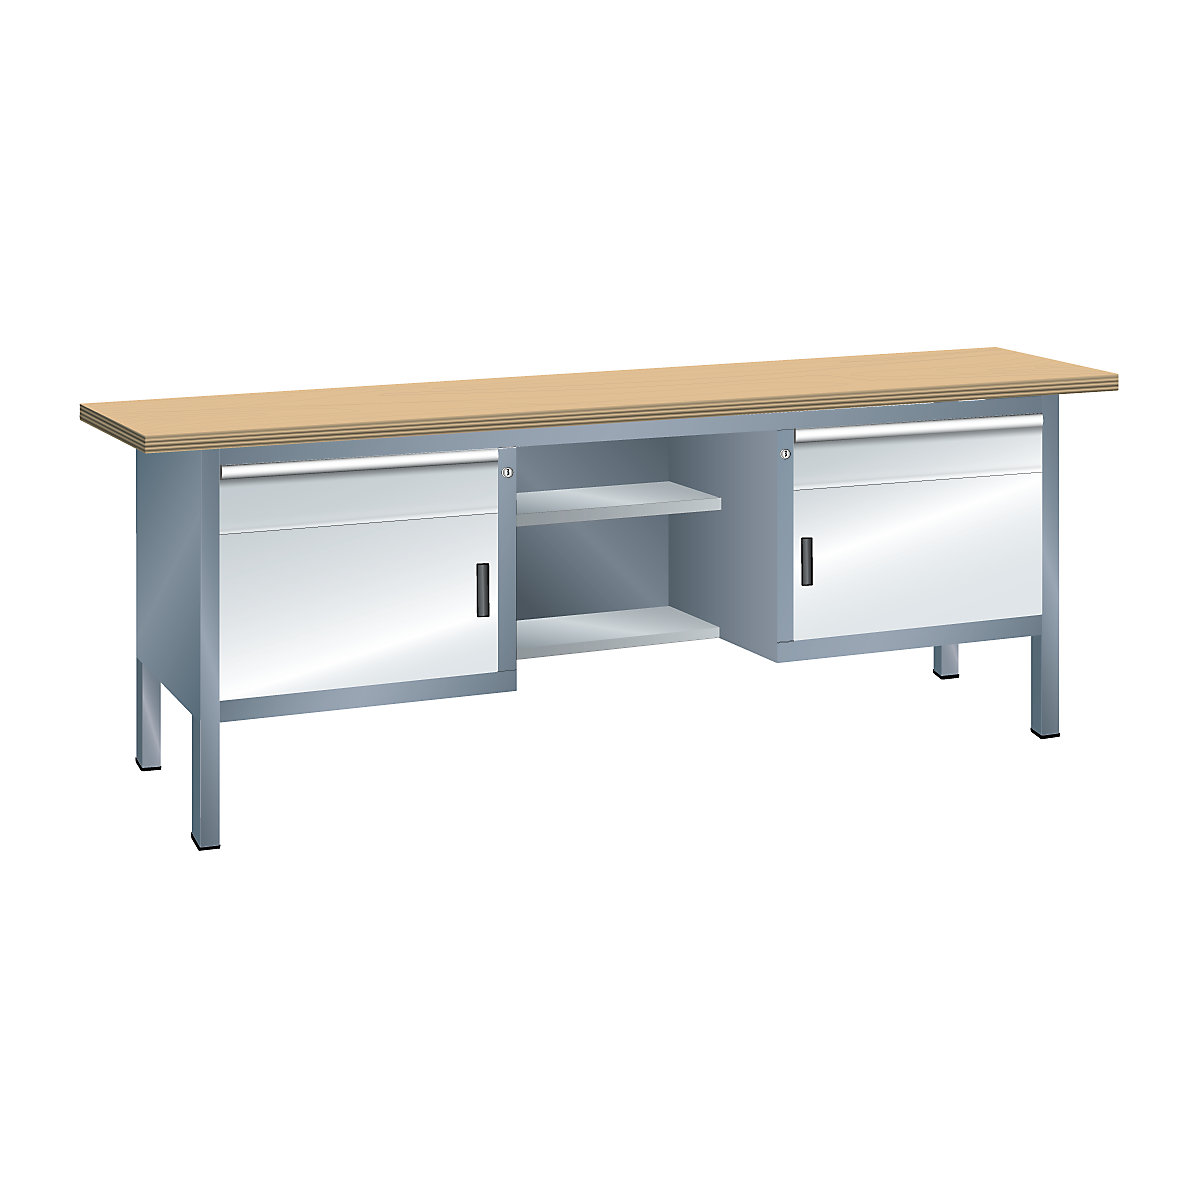 Dílenský stůl s deskou z překližky Multiplex, rámová konstrukce – LISTA, 2 zásuvky, 2 dveře, 4 police, korpus šedá metalíza, čelo světlá šedá-3